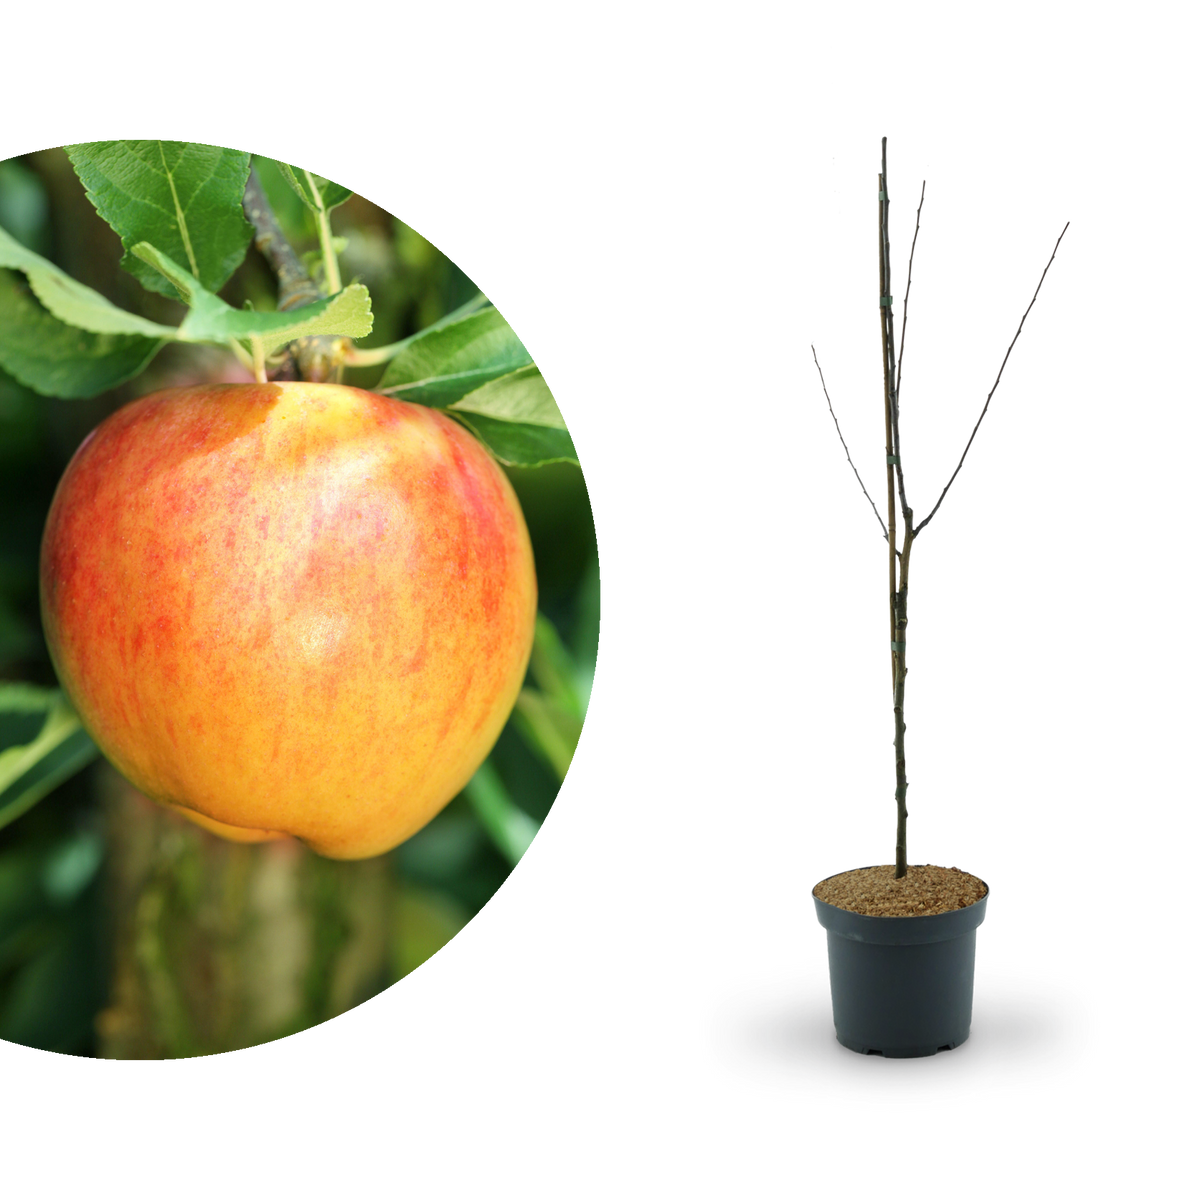 Bio-Apfelbaum \'Alkmene\' Herbstapfel kaufen - Plantura Shop